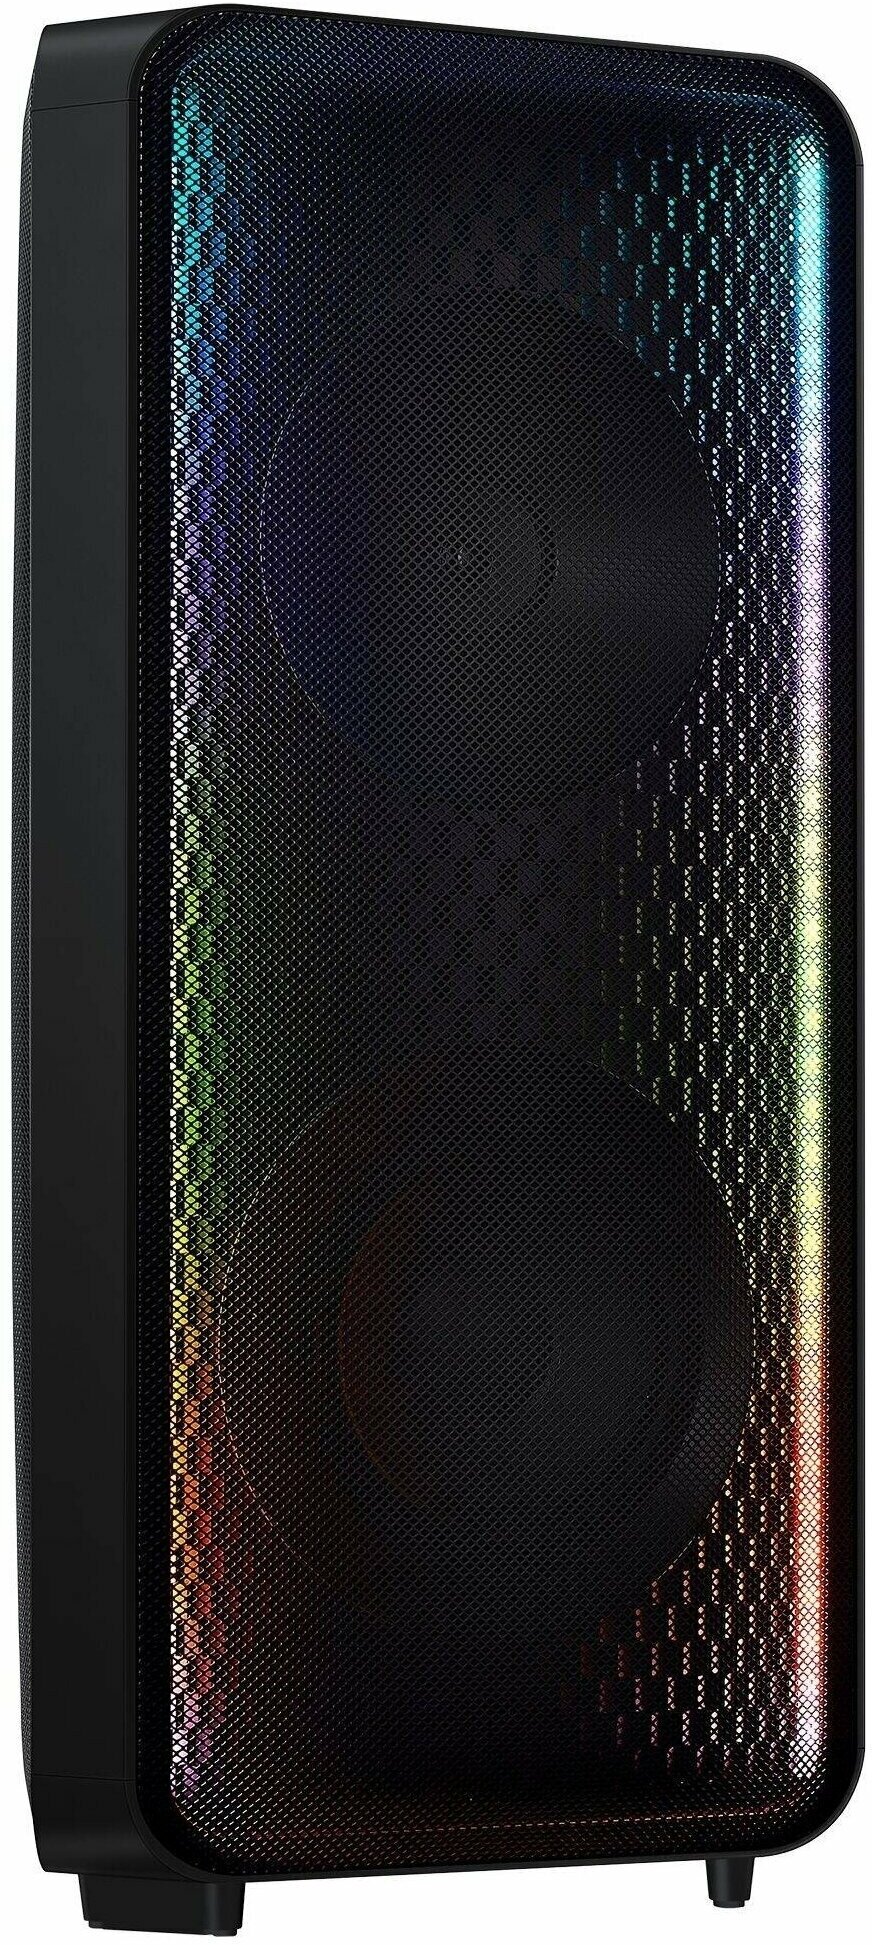 Портативная акустика Samsung Giga Party MX-ST50B, 240 Вт, черный